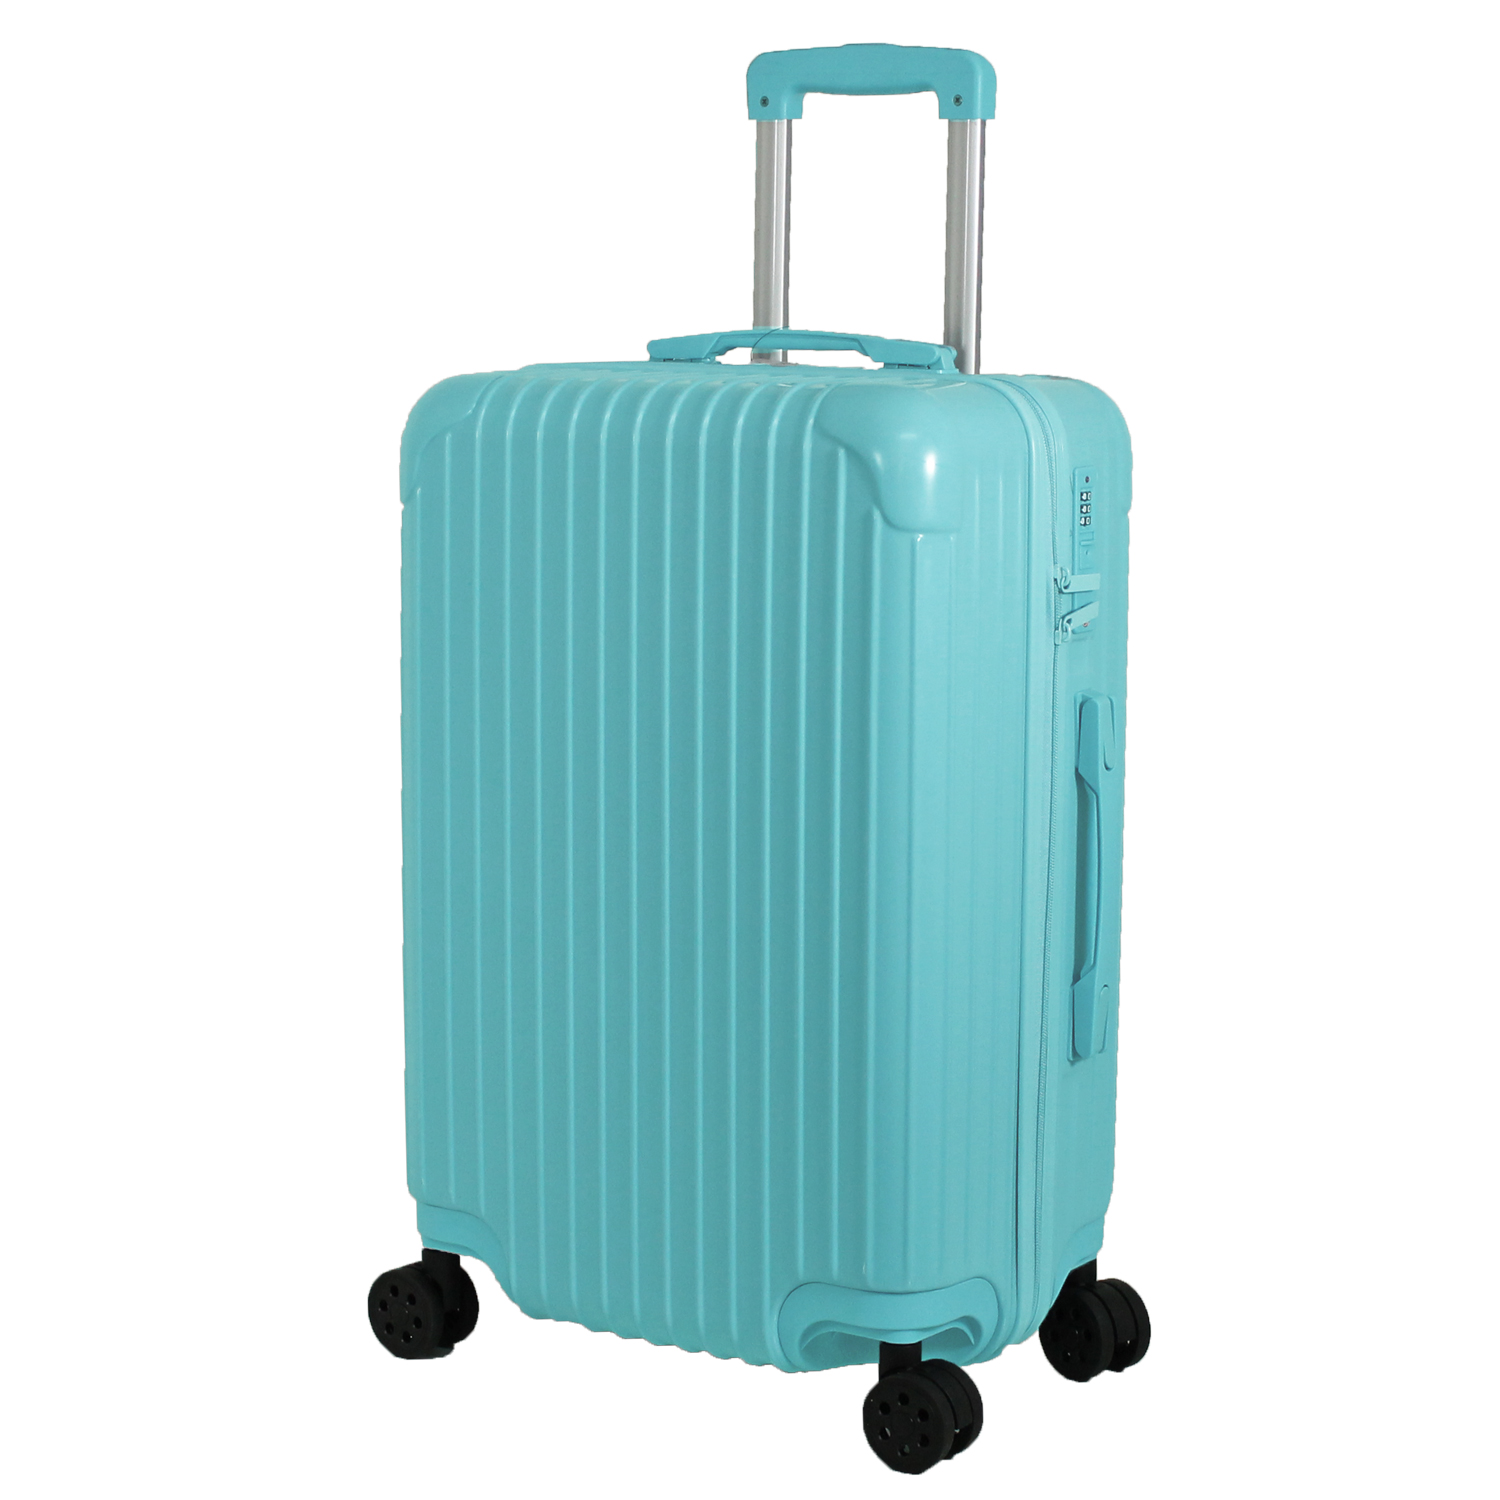 スーツケース キャリーケース Sサイズ かわいい 日本企業企画 修学旅行 